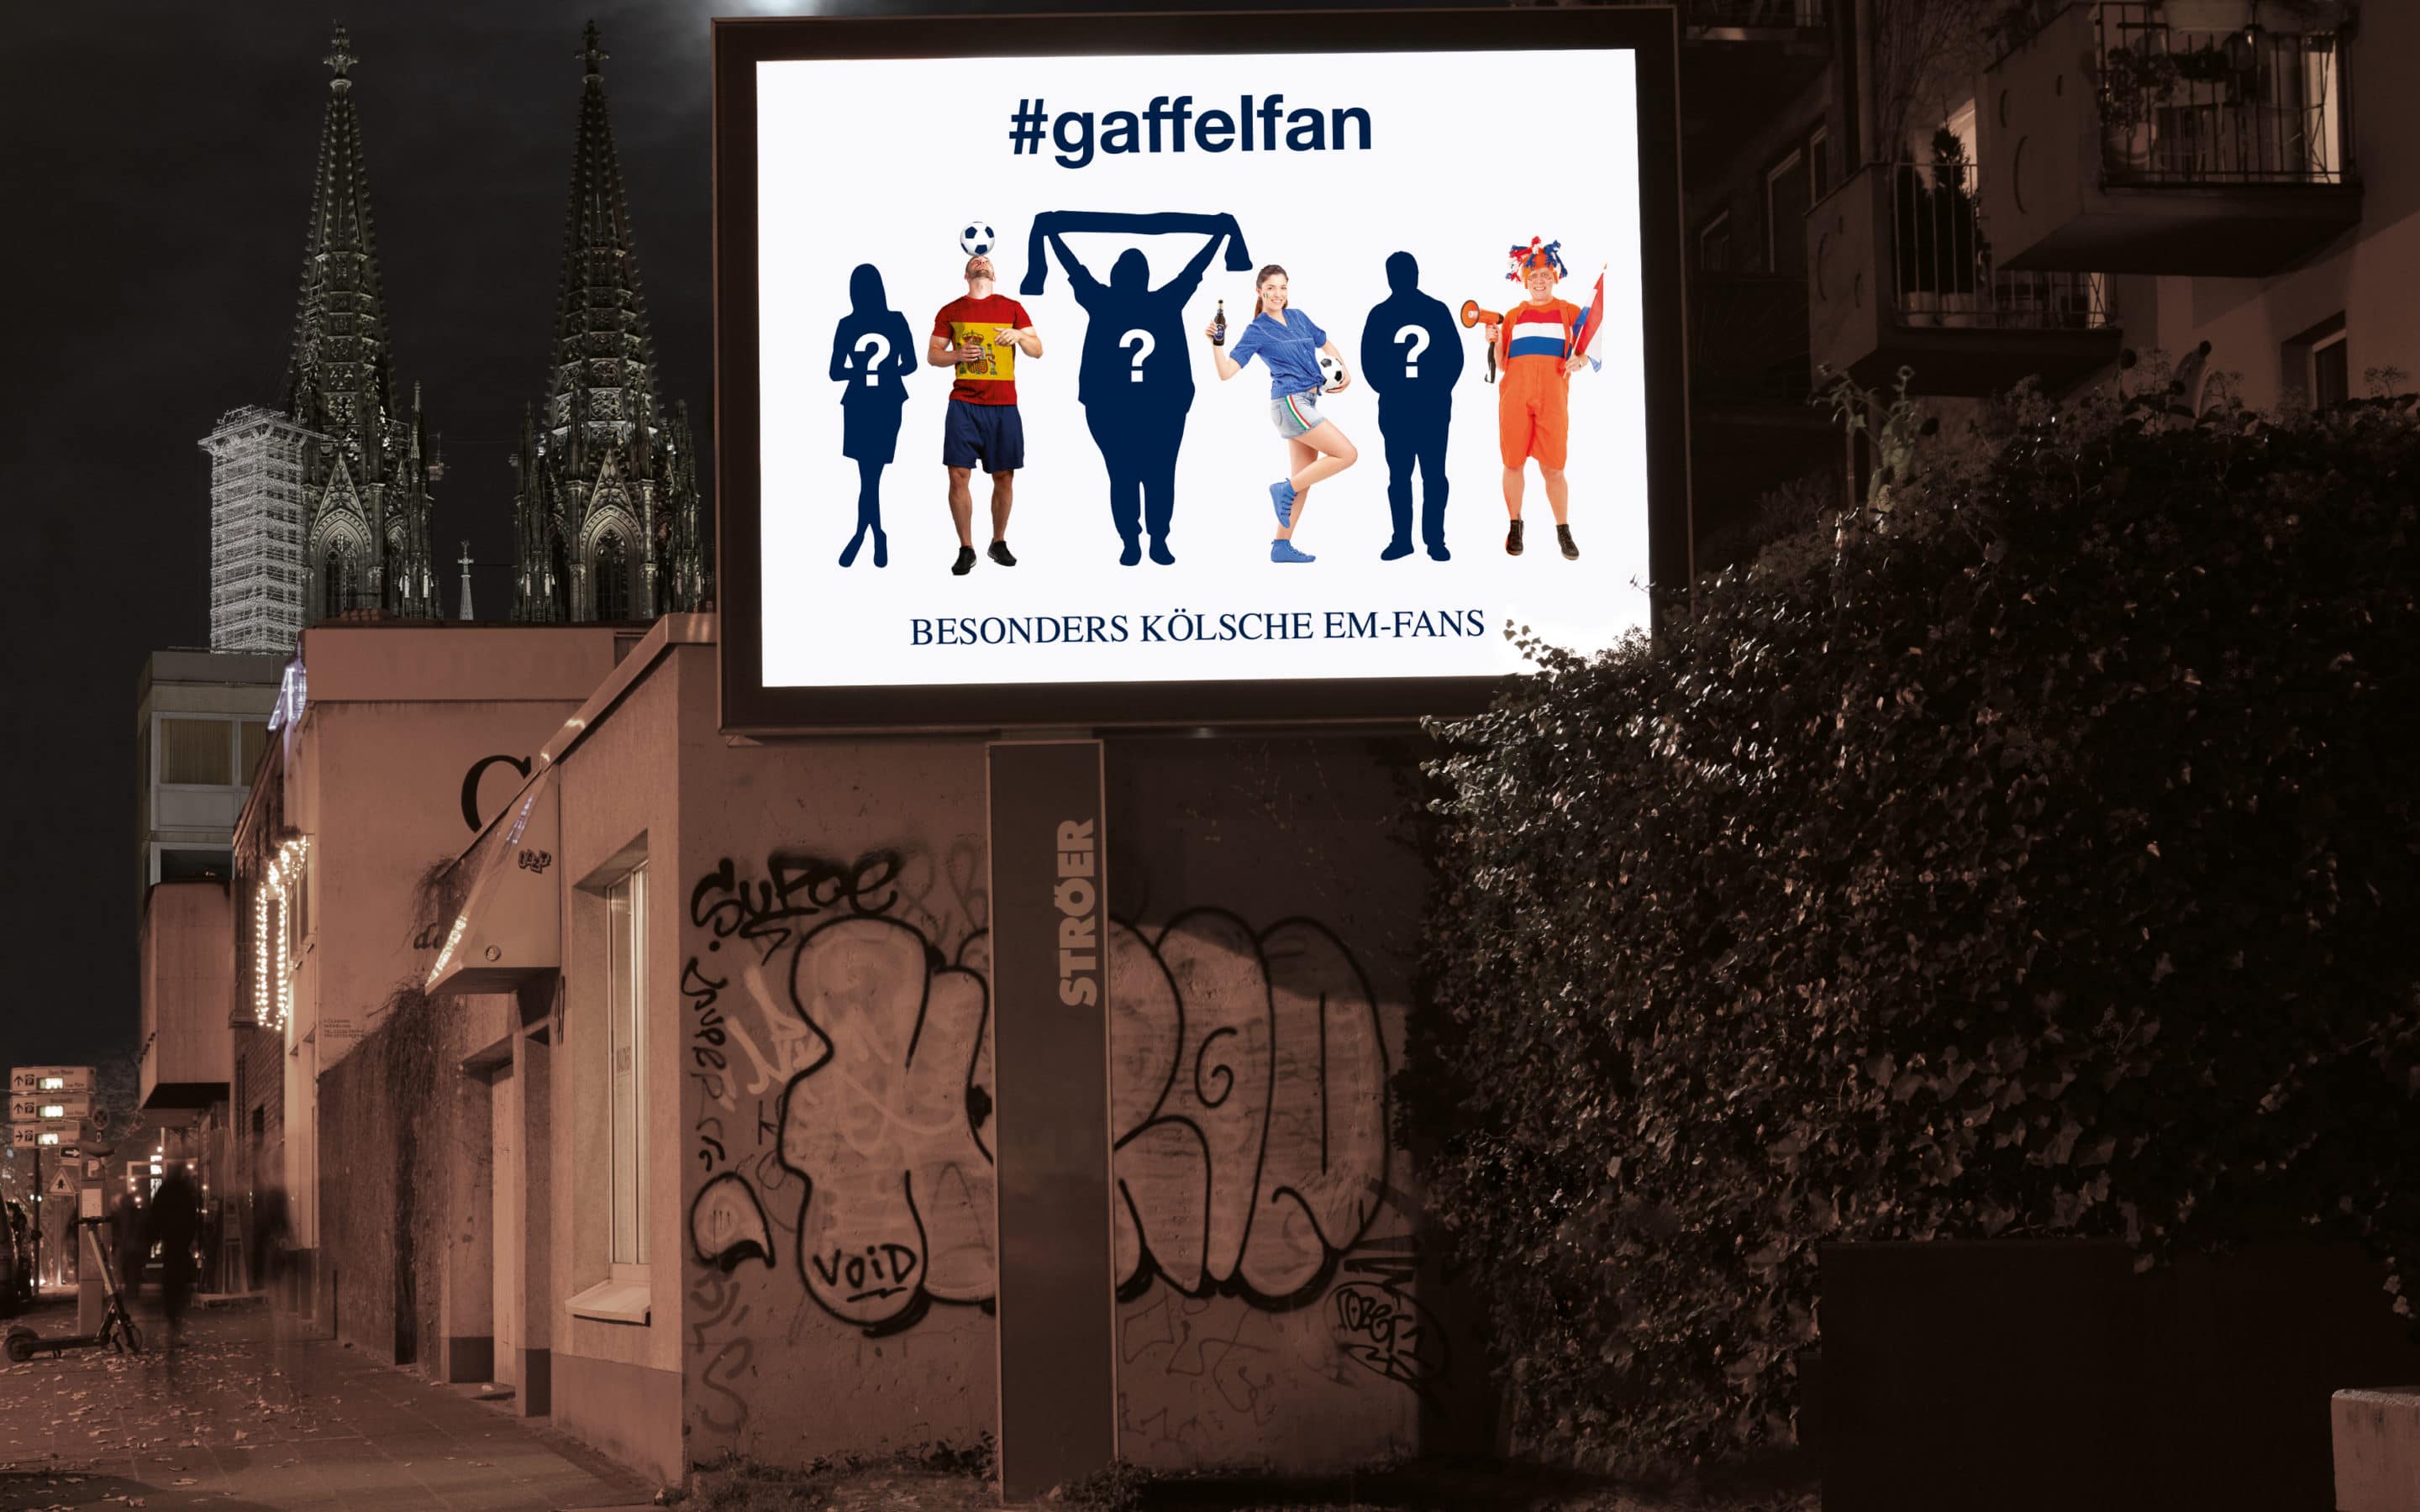 Gaffel sucht mit einer Instagram-Kampagne echte Fans für das EM-Motiv